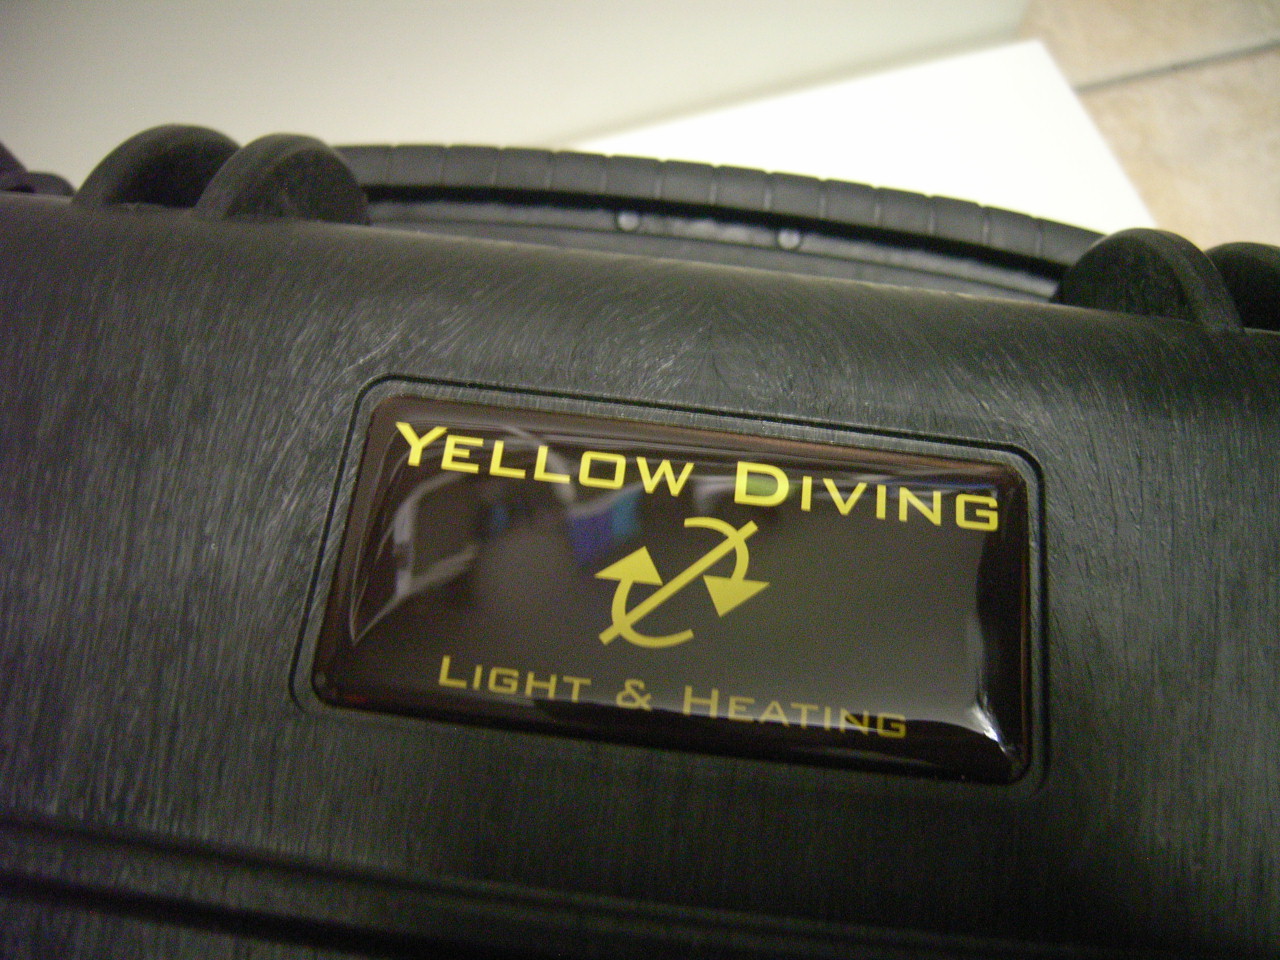 Schutzkoffer für Yellow Diving Lampen und Akkutank, verschiedene Ausführungen